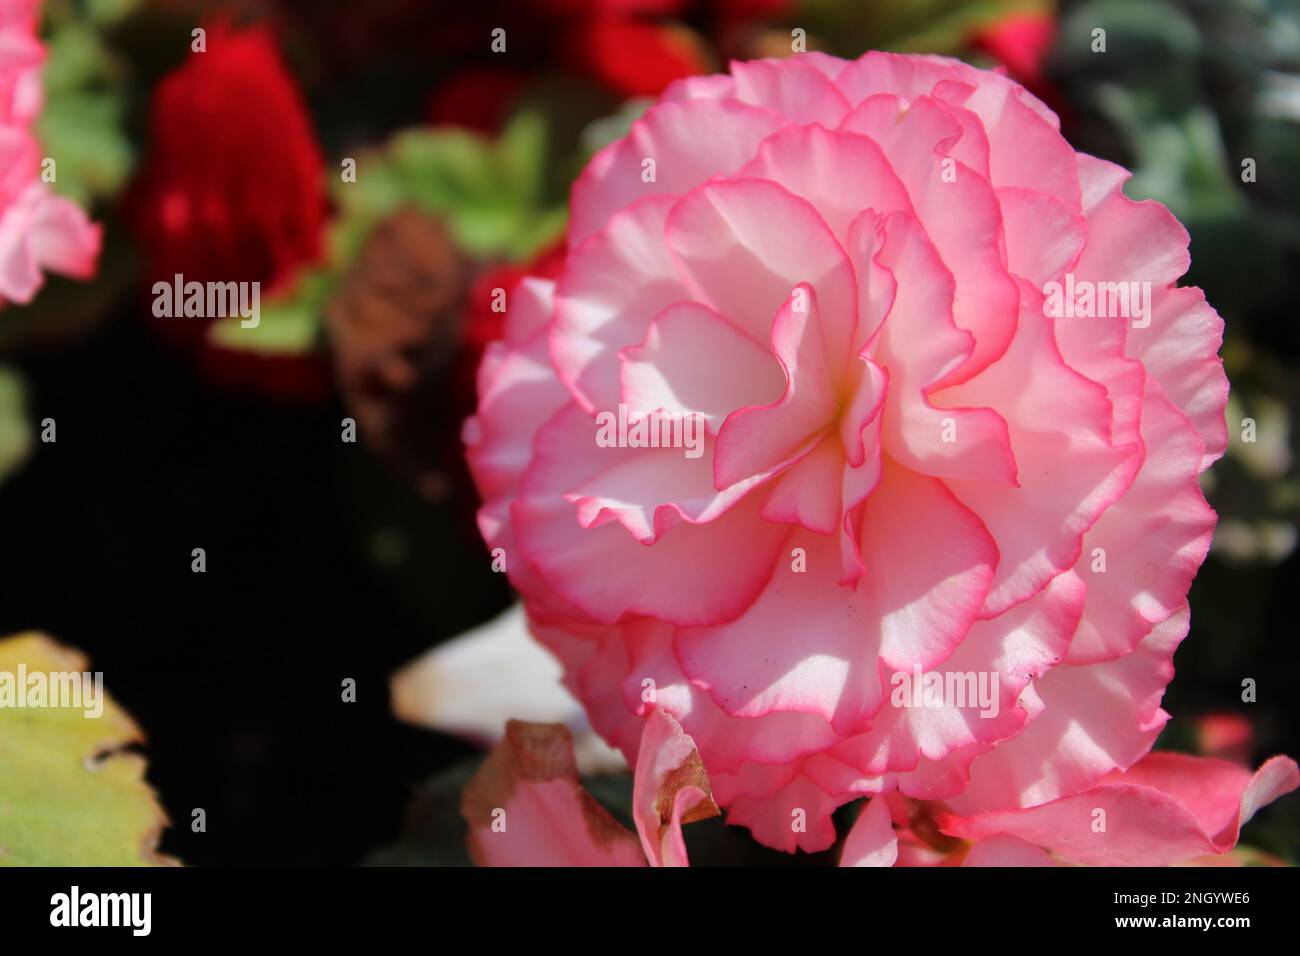 Rosa und weiße Blüten aus der Nähe. Frühlingsblumen-Konzept und Hintergrund Stockfoto